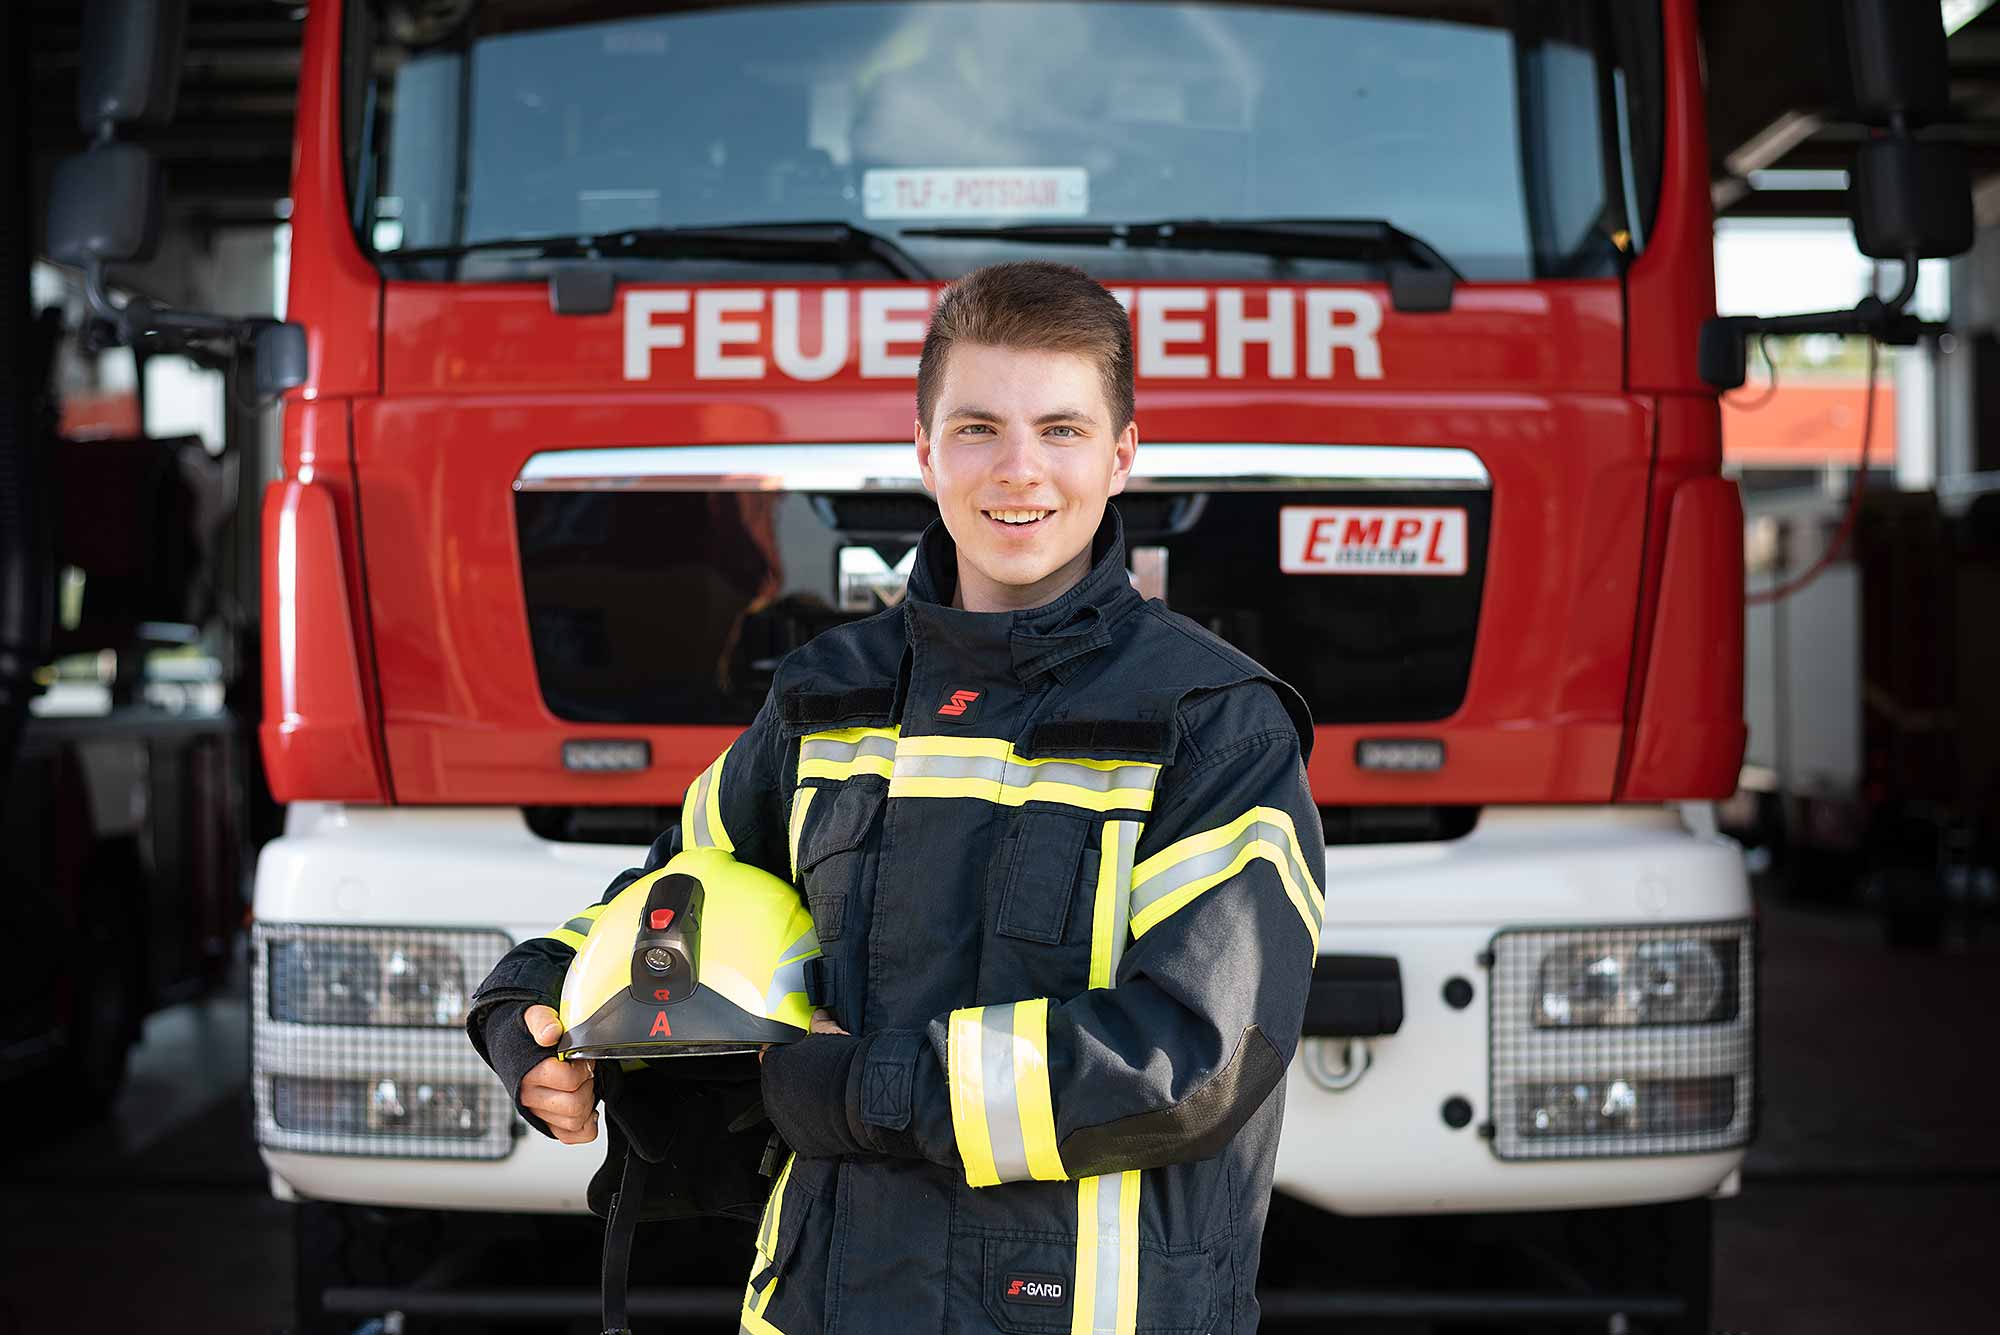 © Thilo Gögelein Fotografie // Feuerwehrmann der Feuerwehr Potsdam in Einsatzkleidung vor Feuerwehrfahrzeug